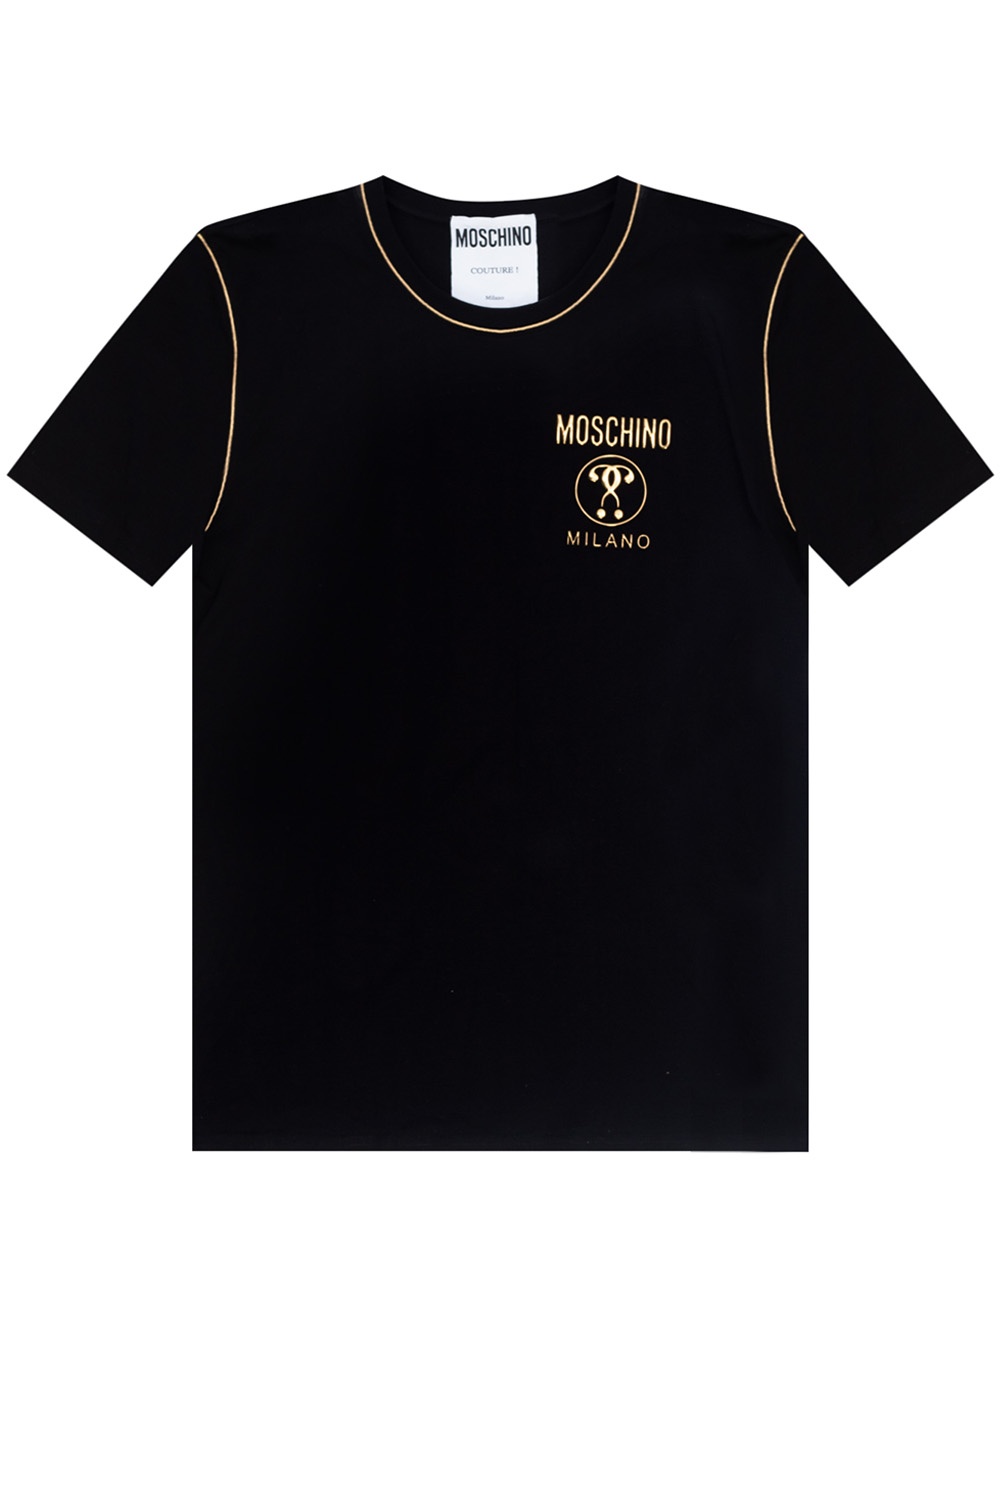 moschino t shirt size chart